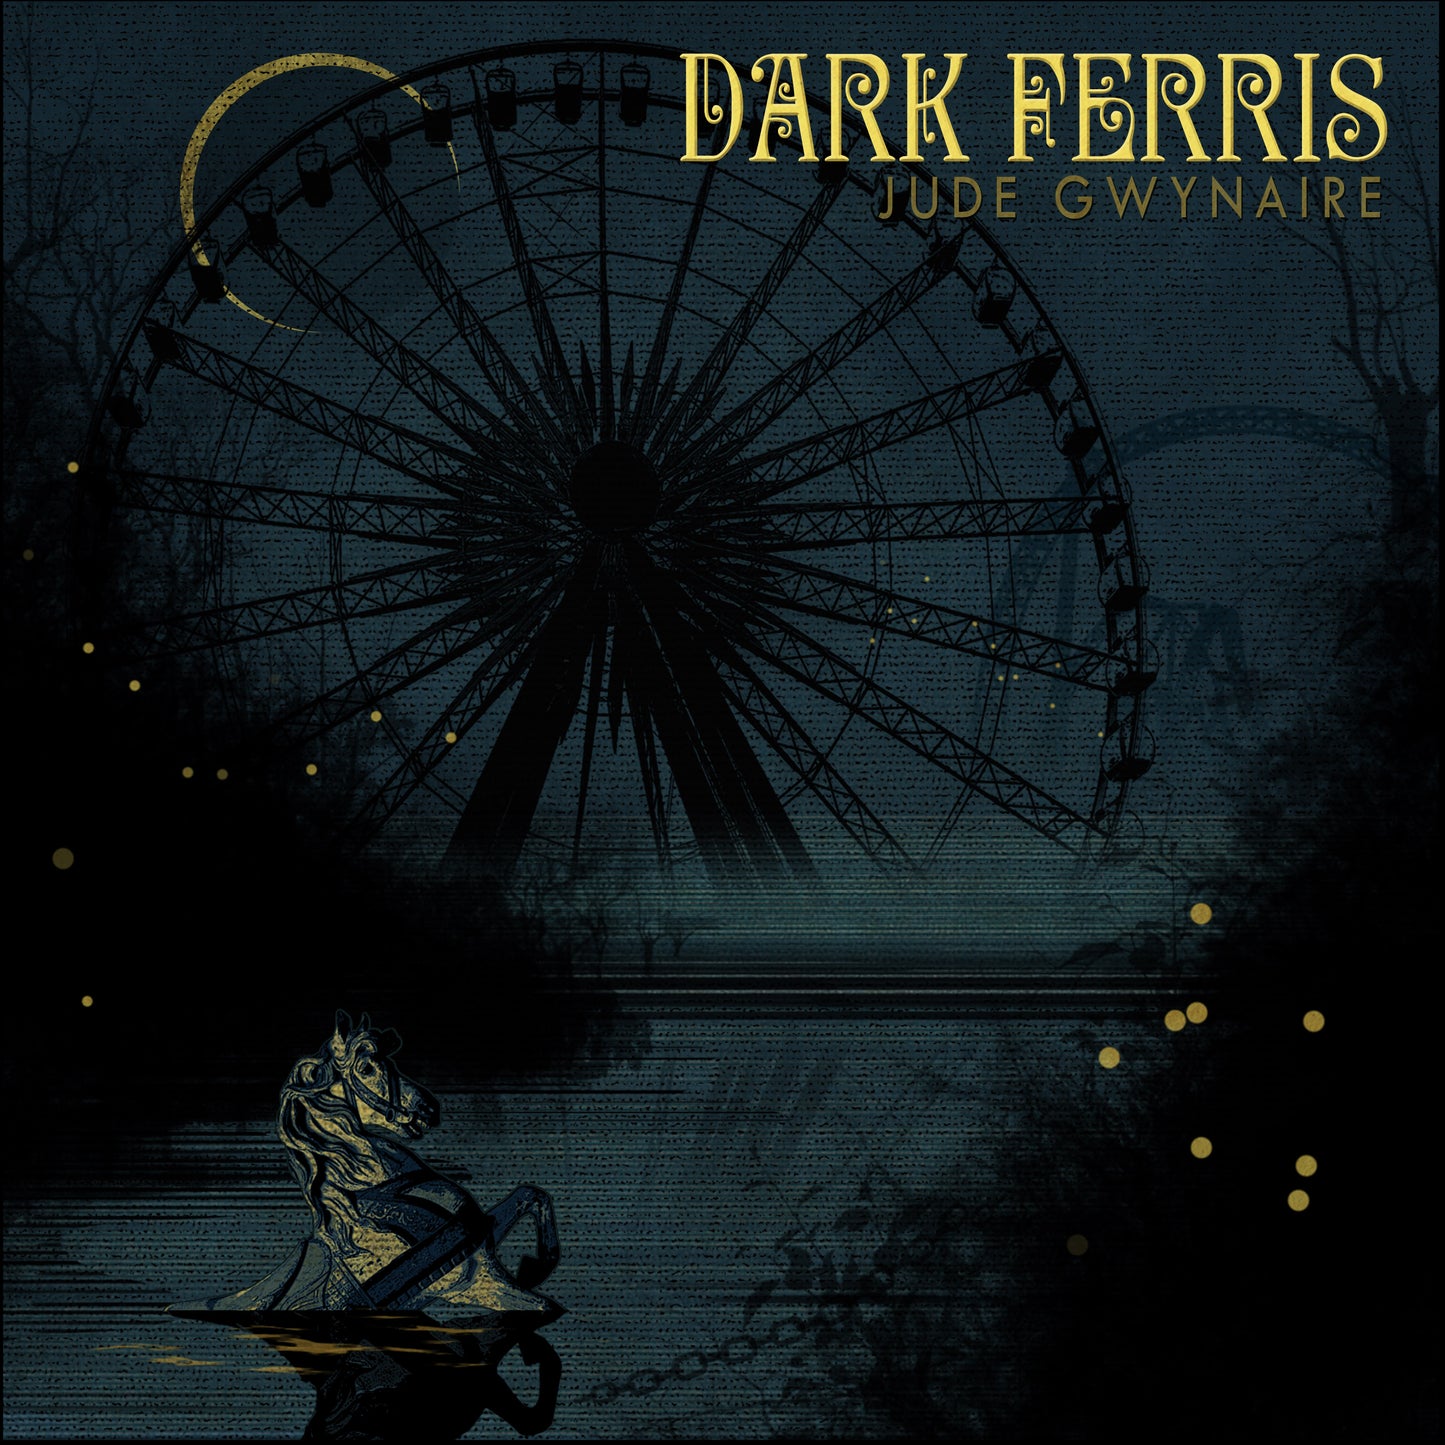 Dark Ferris